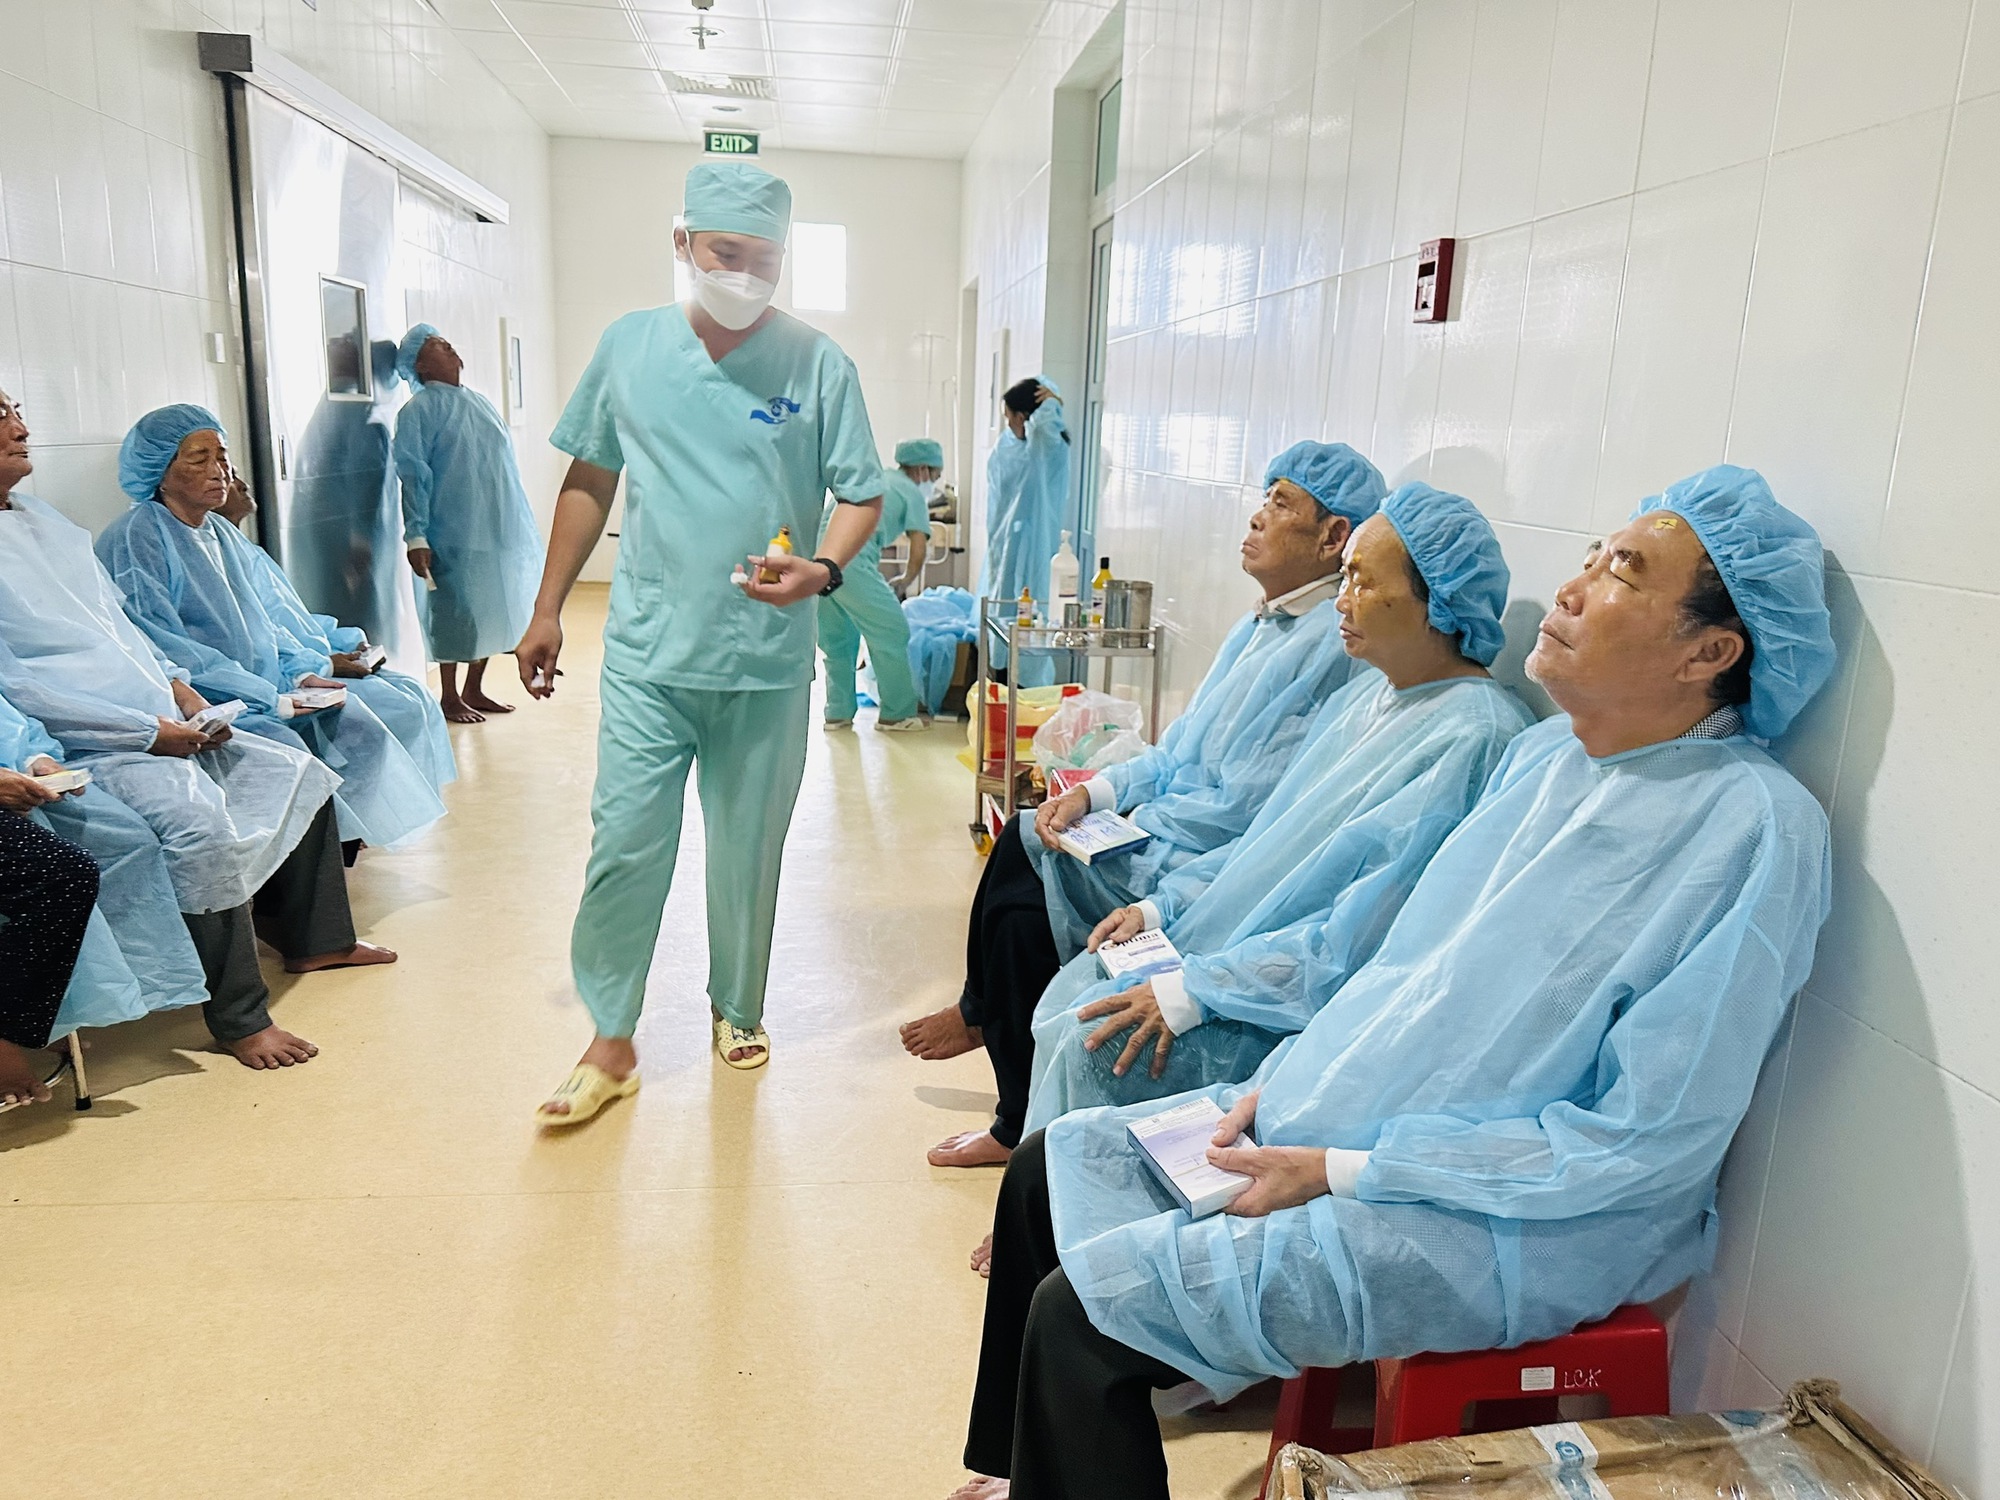 Hàng trăm người dân Cà Mau xếp hàng để bác sĩ ở Sài Gòn về phẫu thuật Phaco miễn phí - Ảnh 4.